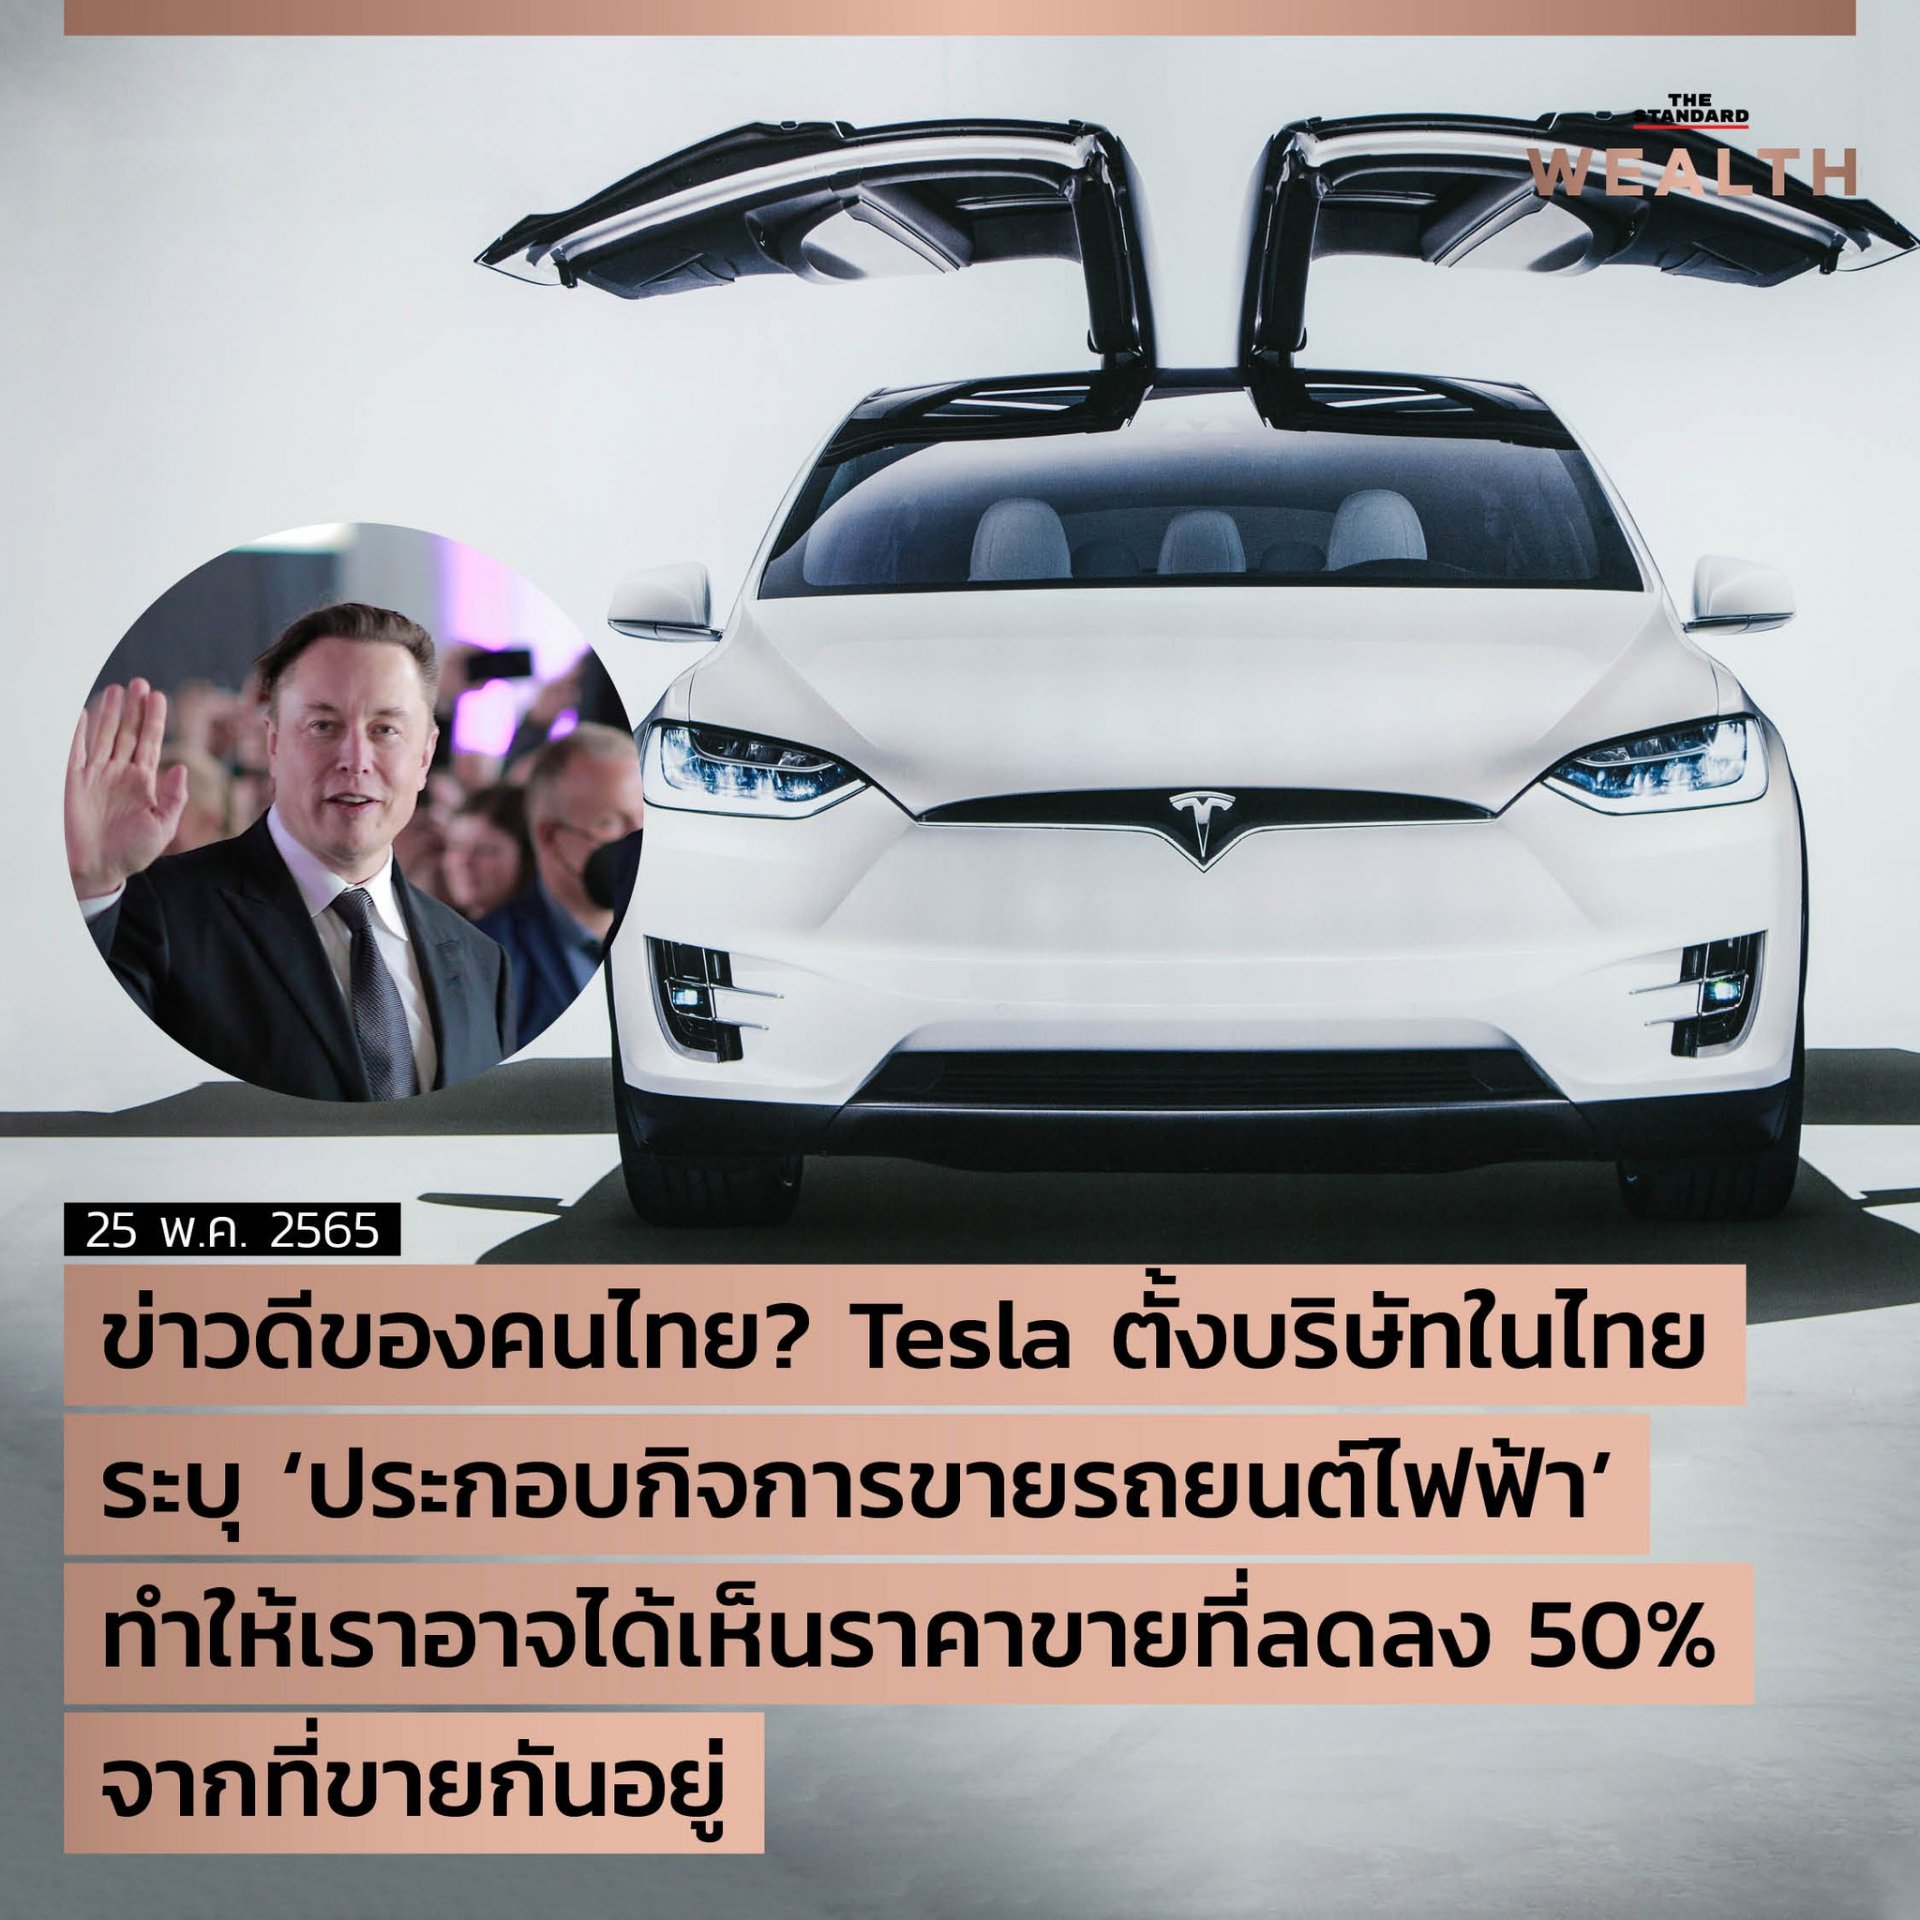 หลังจากเปิดขายผ่านตัวแทนจำหน่ายมานาน ดูเหมือนว่าในที่สุด Tesla อาจตัดสินใจเปิด ‘โชว์รูม’ ด้วยตัวเอง เพราะพบการจดทะเบียนตั้งบริษัทในไทยอย่างเป็นทางการ ระบุ ‘ประกอบกิจการขายรถยนต์ไฟฟ้า’